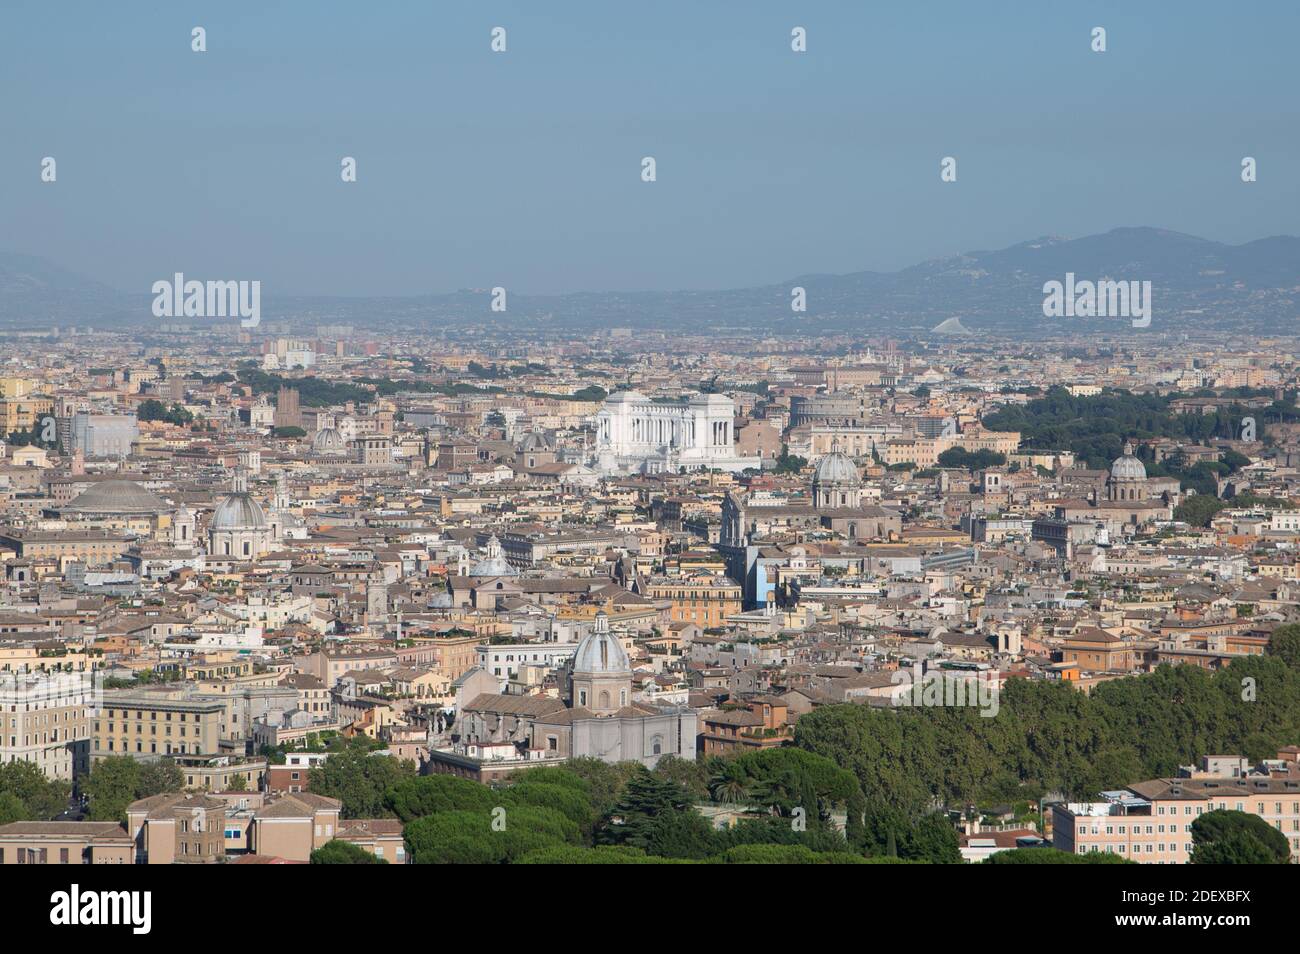 Die Skyline von Rom, von der Engelsburg aus gesehen, mit der Kuppel der Kirche San Agnese, dem Campidoglio und dem Denkmal Altare della Patria. Stockfoto